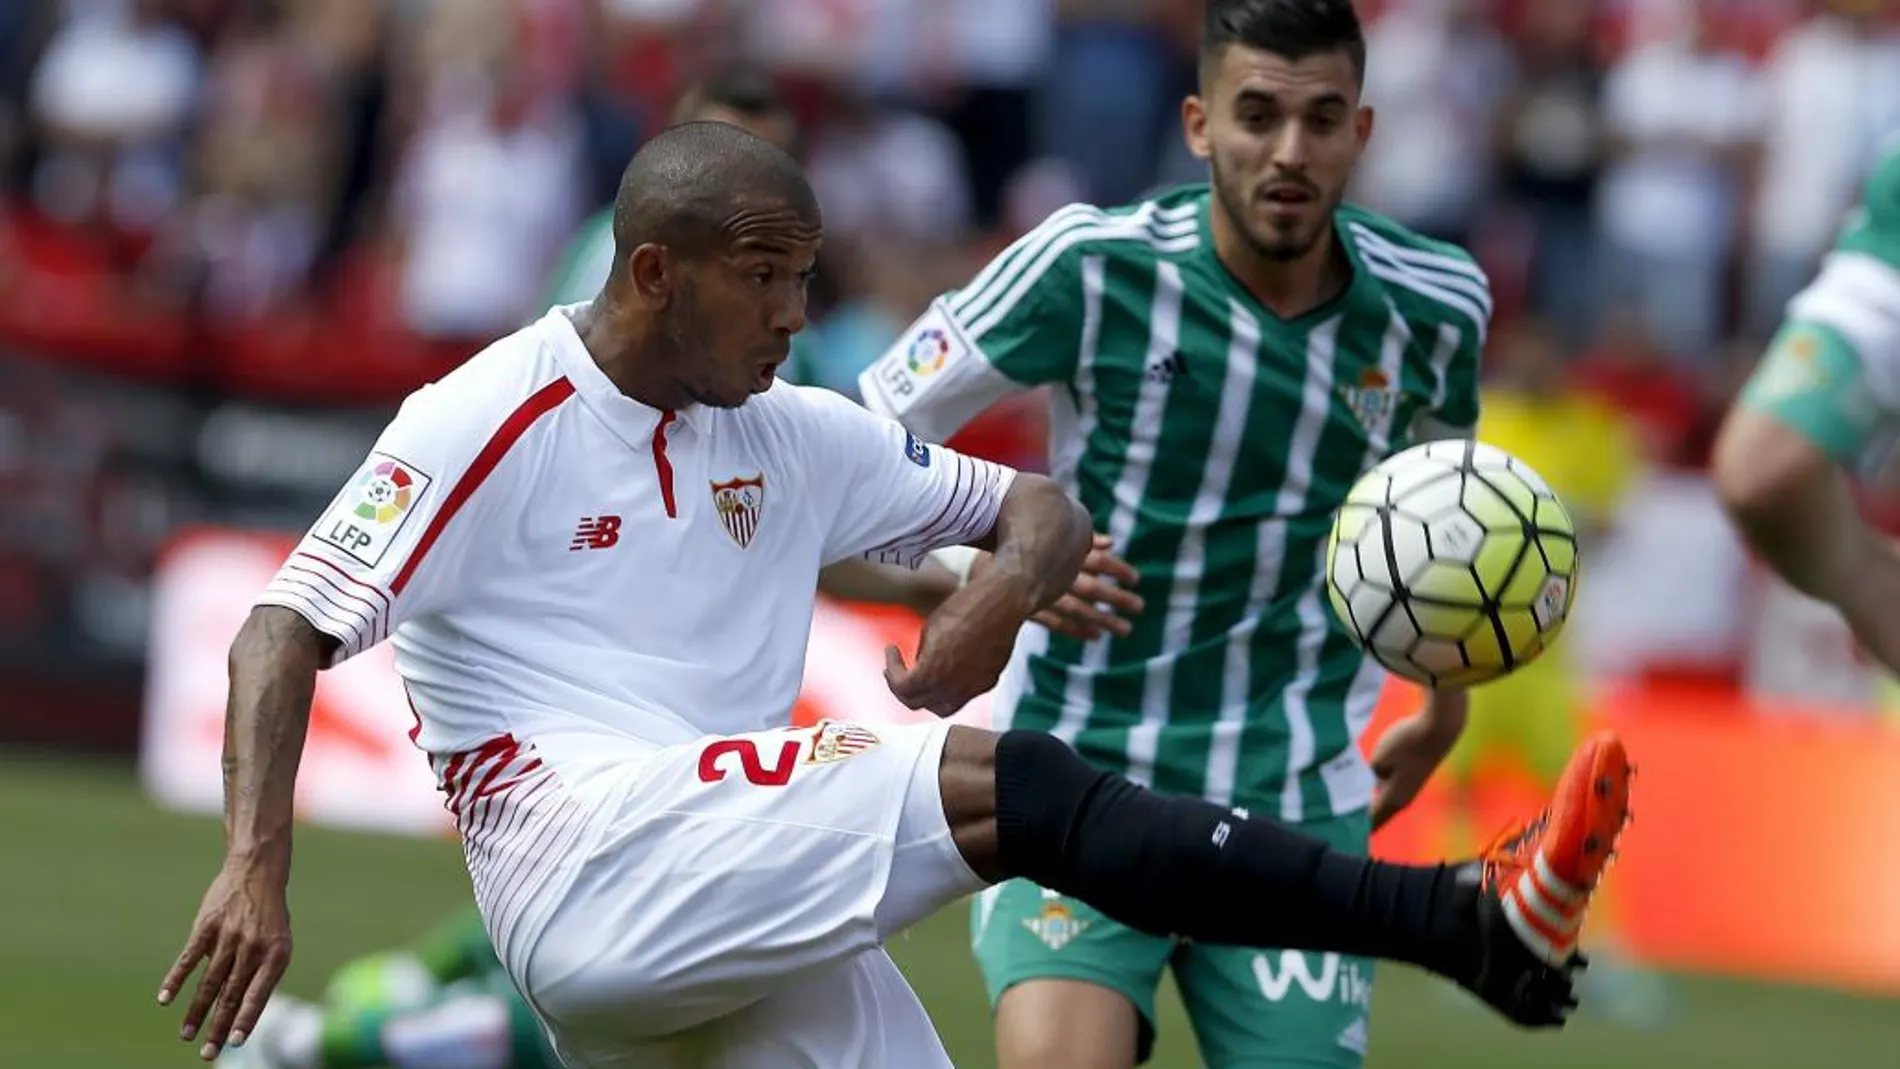 El defensa del Sevilla Mariano Ferreira y el centrocampista del Betis Dani Ceballo